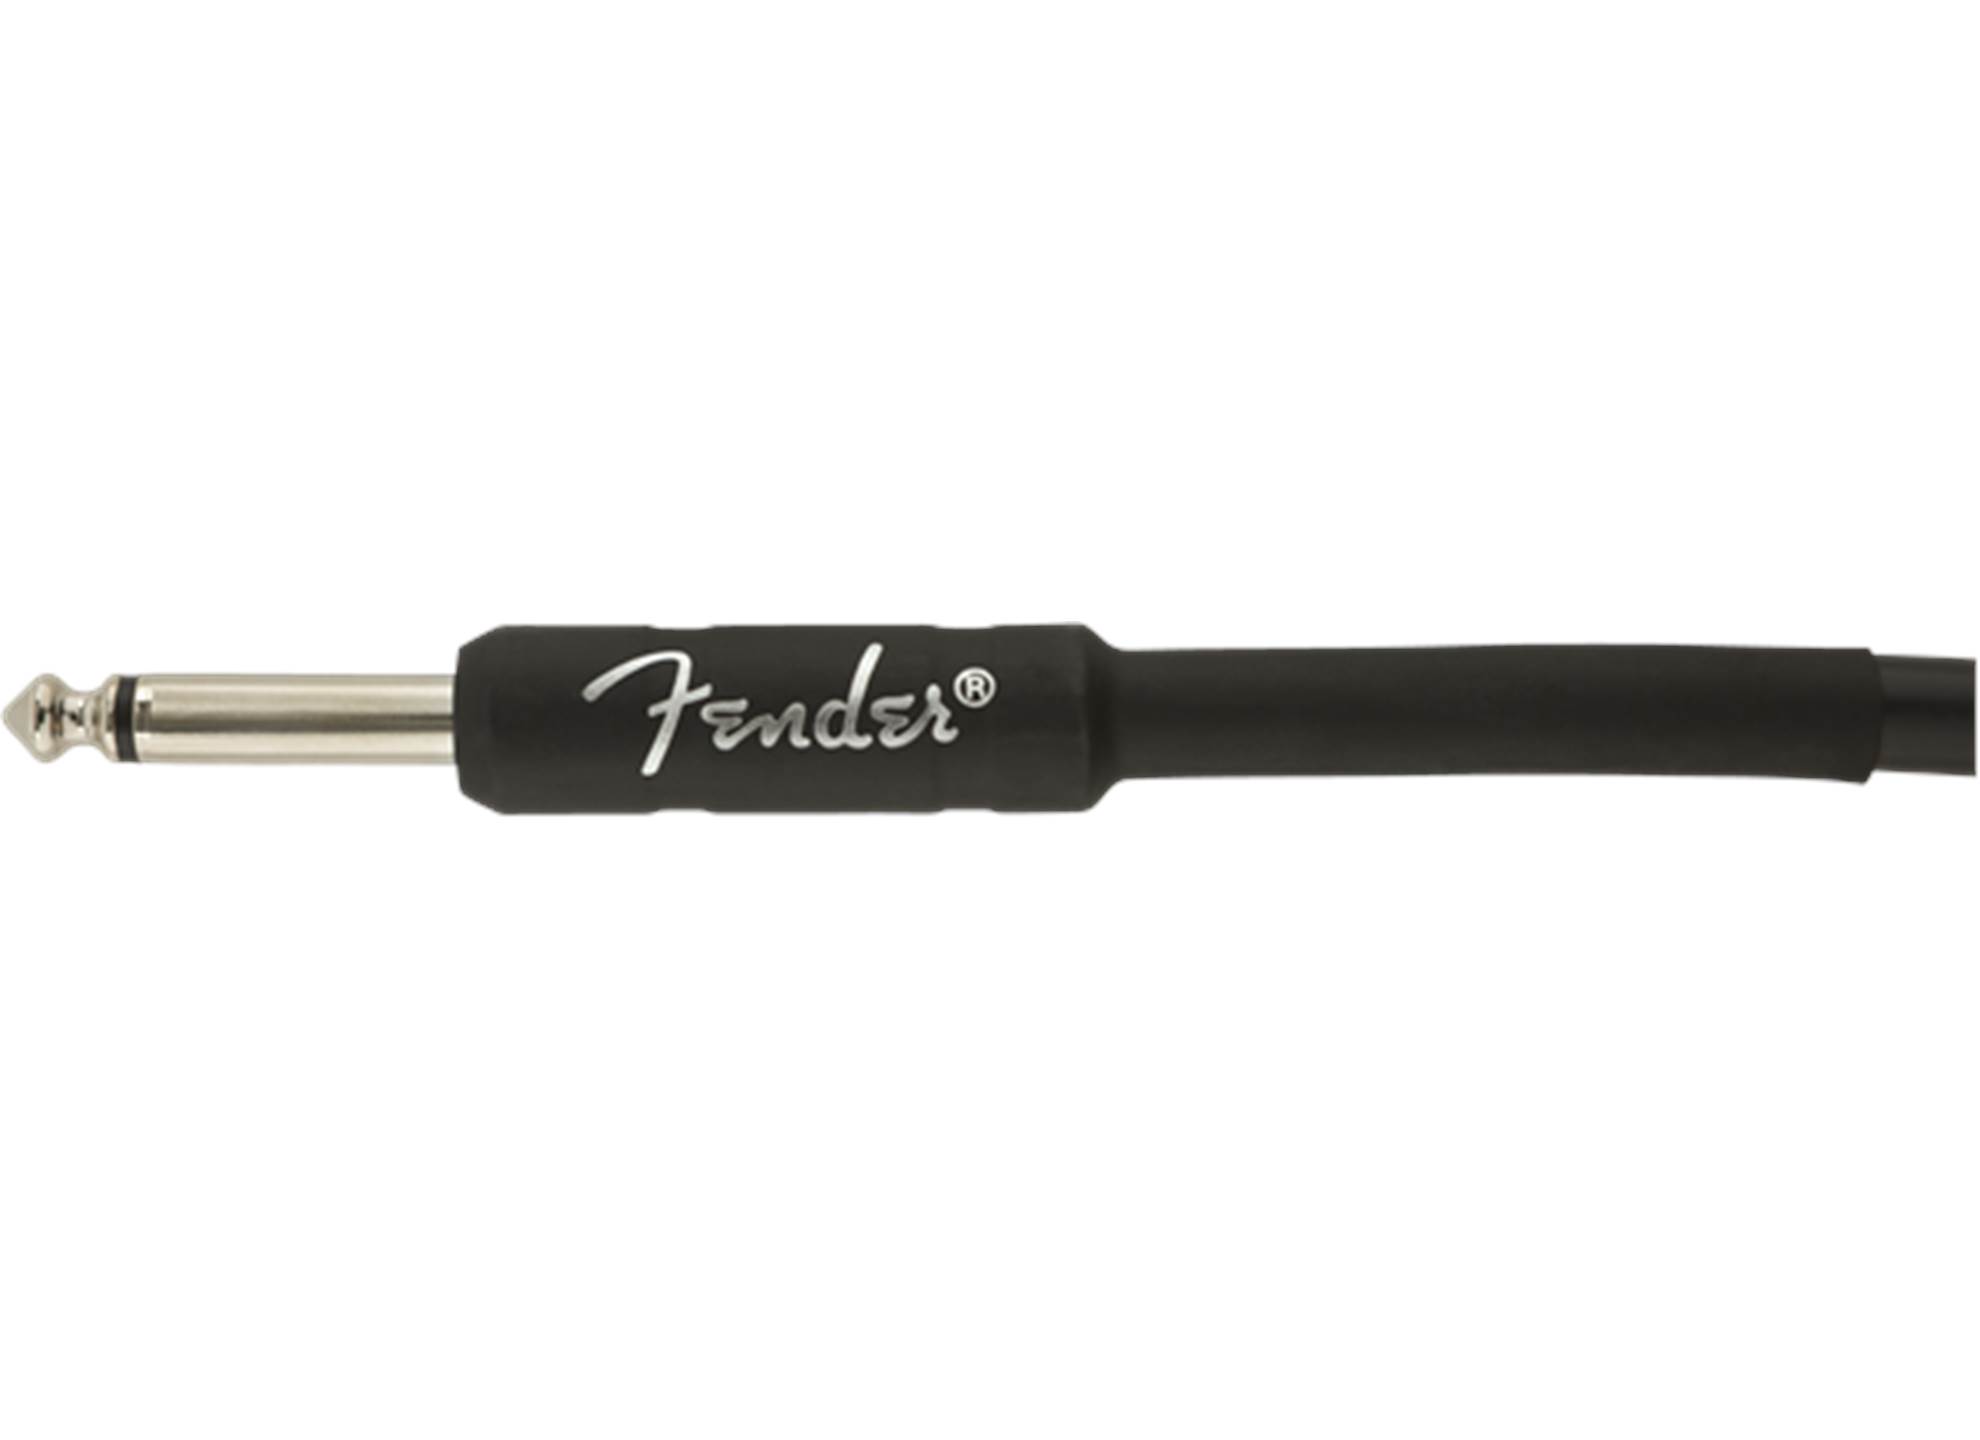 Professional Series instrumentkabel 3 m black, vinklad kontakt